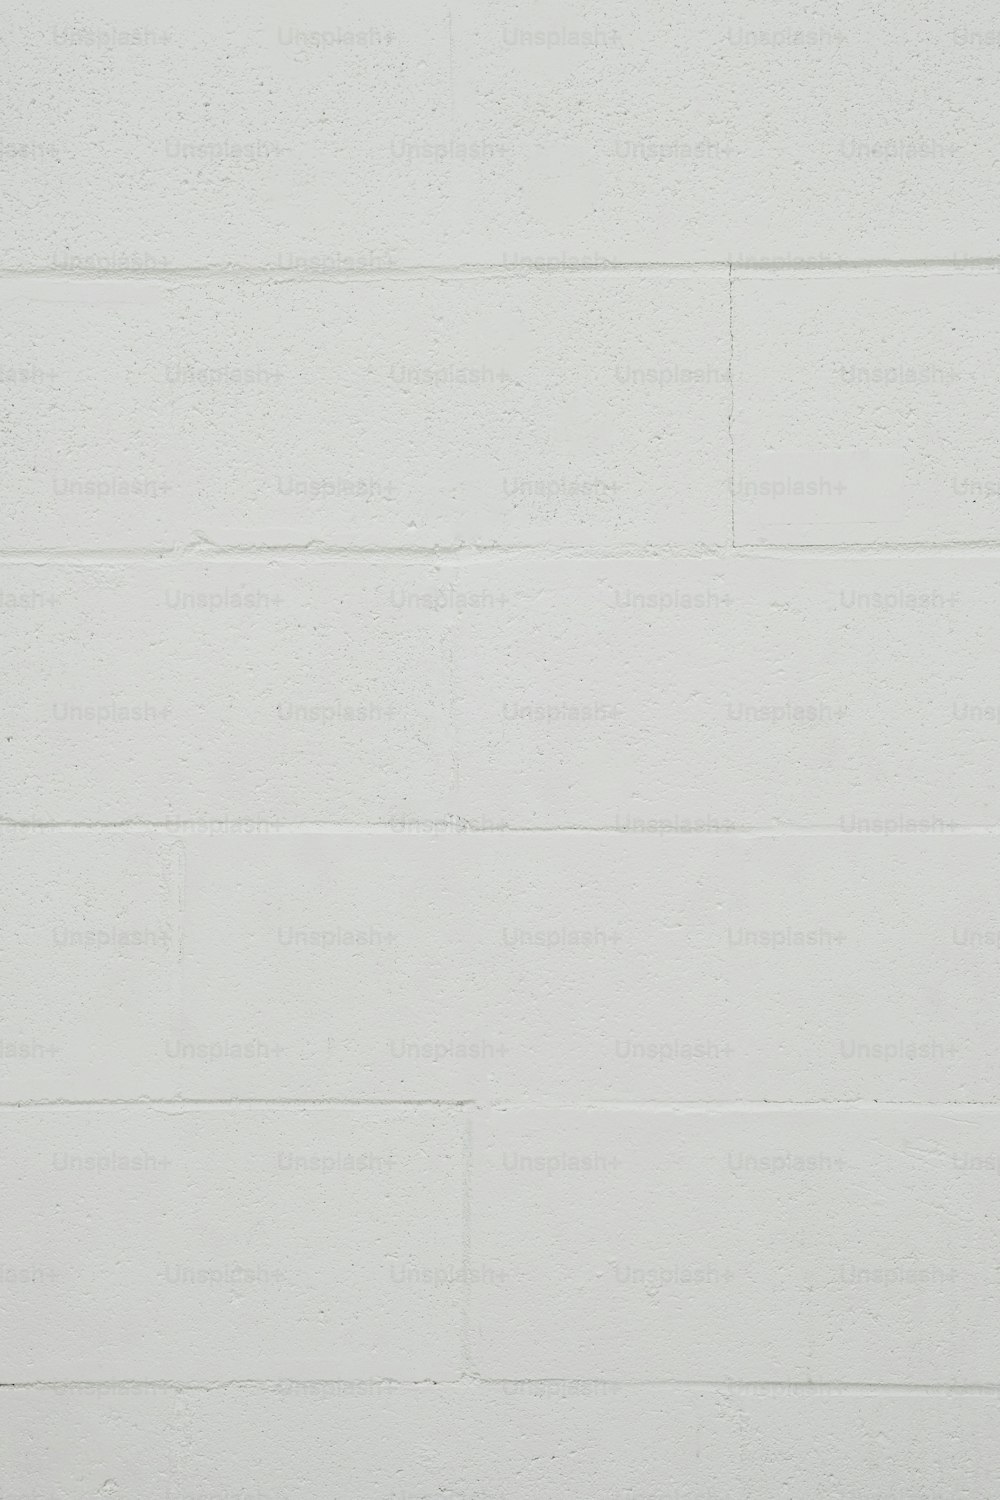 eine weiße Backsteinmauer mit einer schwarz-weißen Uhr darauf